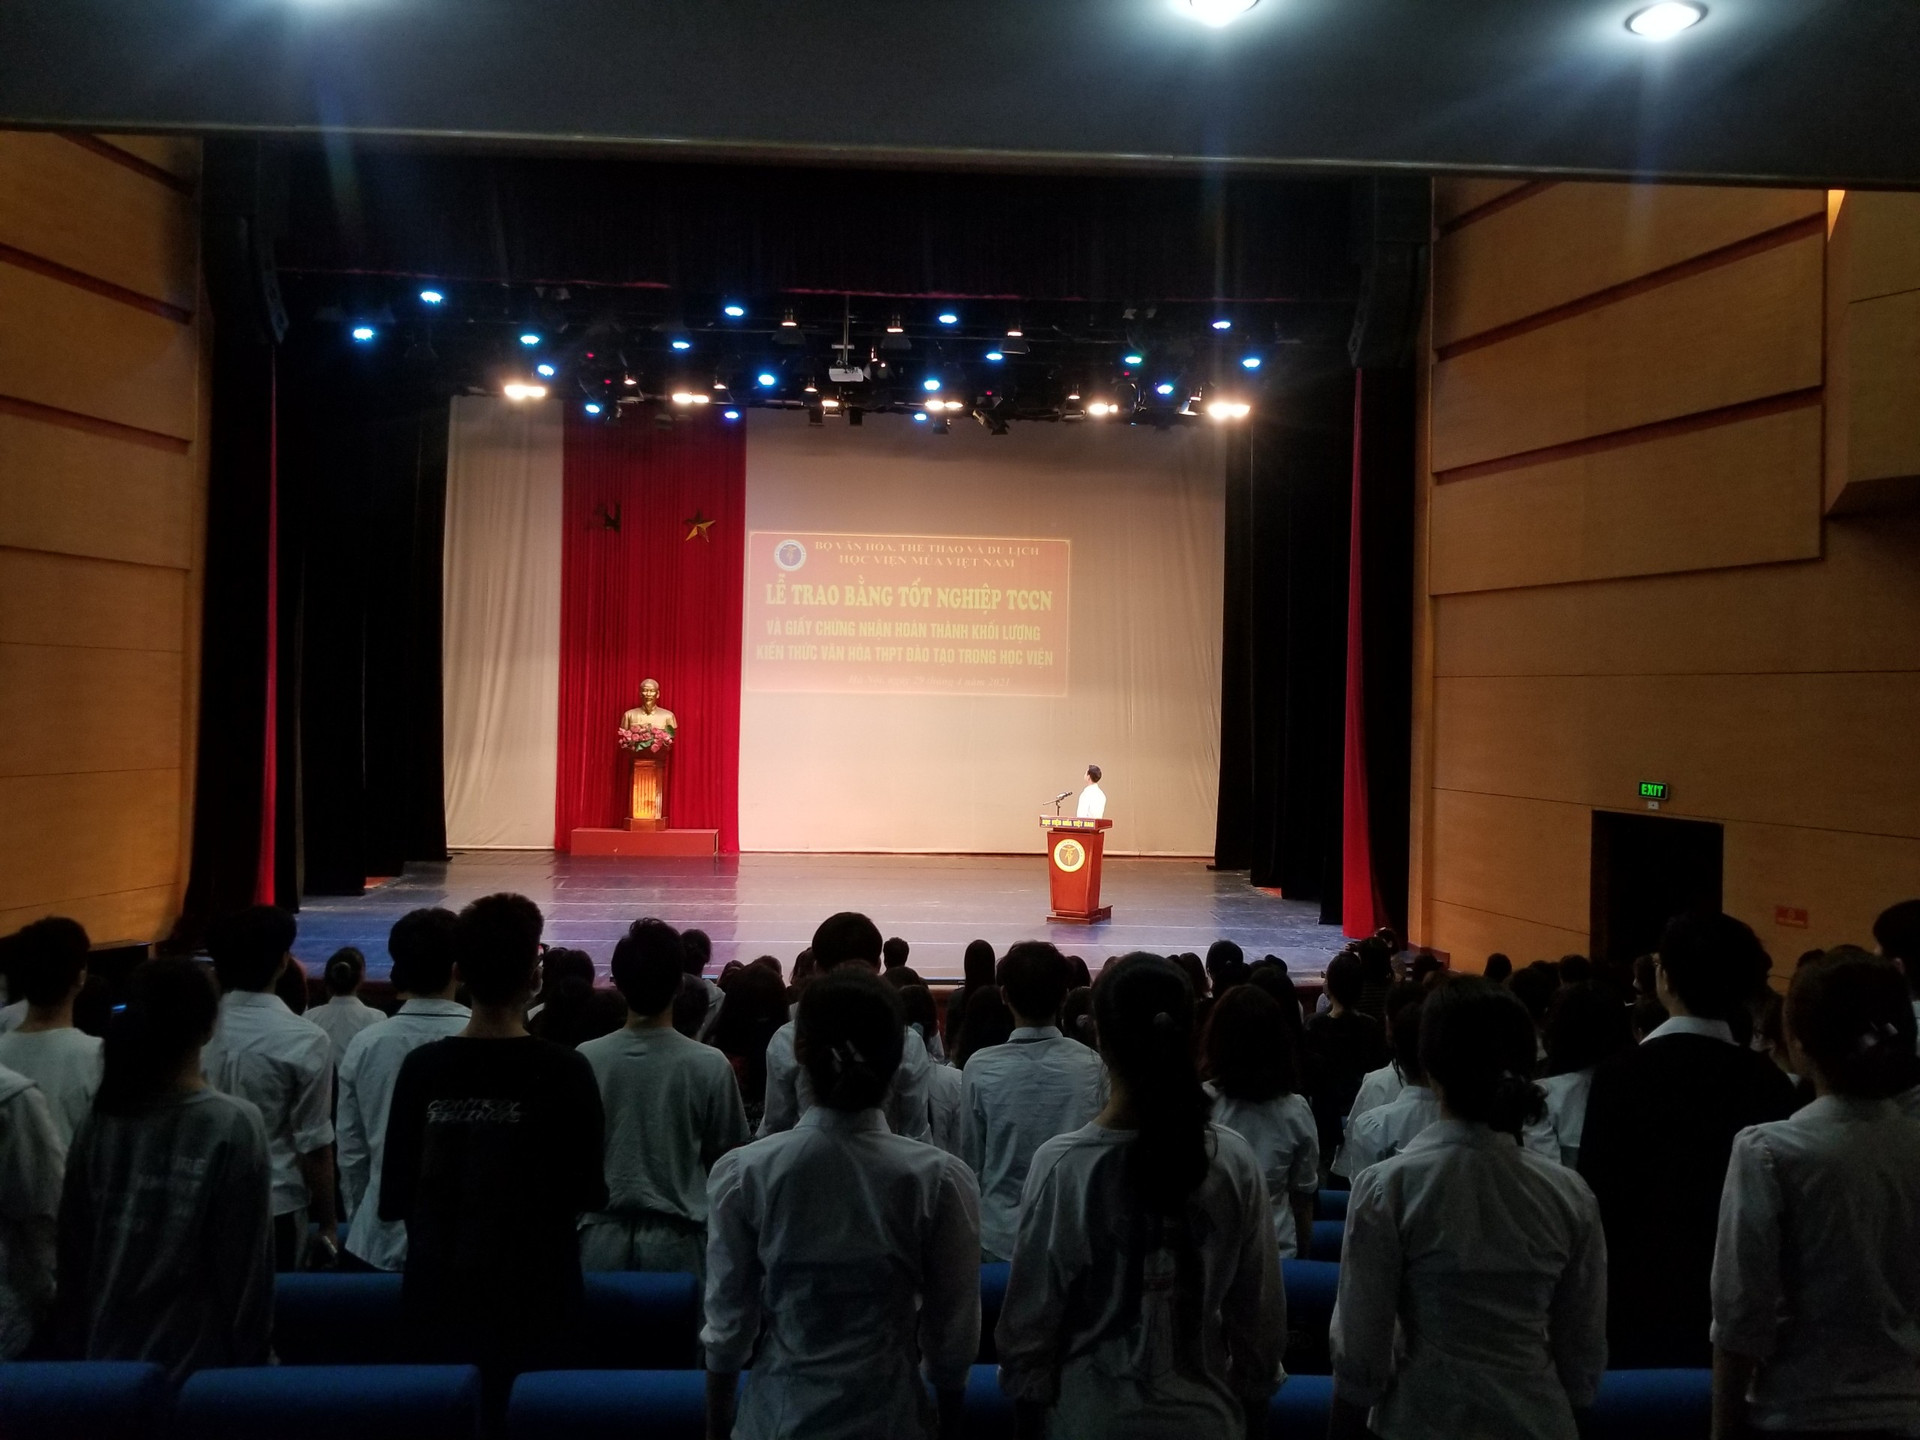 Lễ trao bằng tốt nghiệp diễn ra lúc 9h30 tại Hội trường C, Học viện Múa Việt Nam